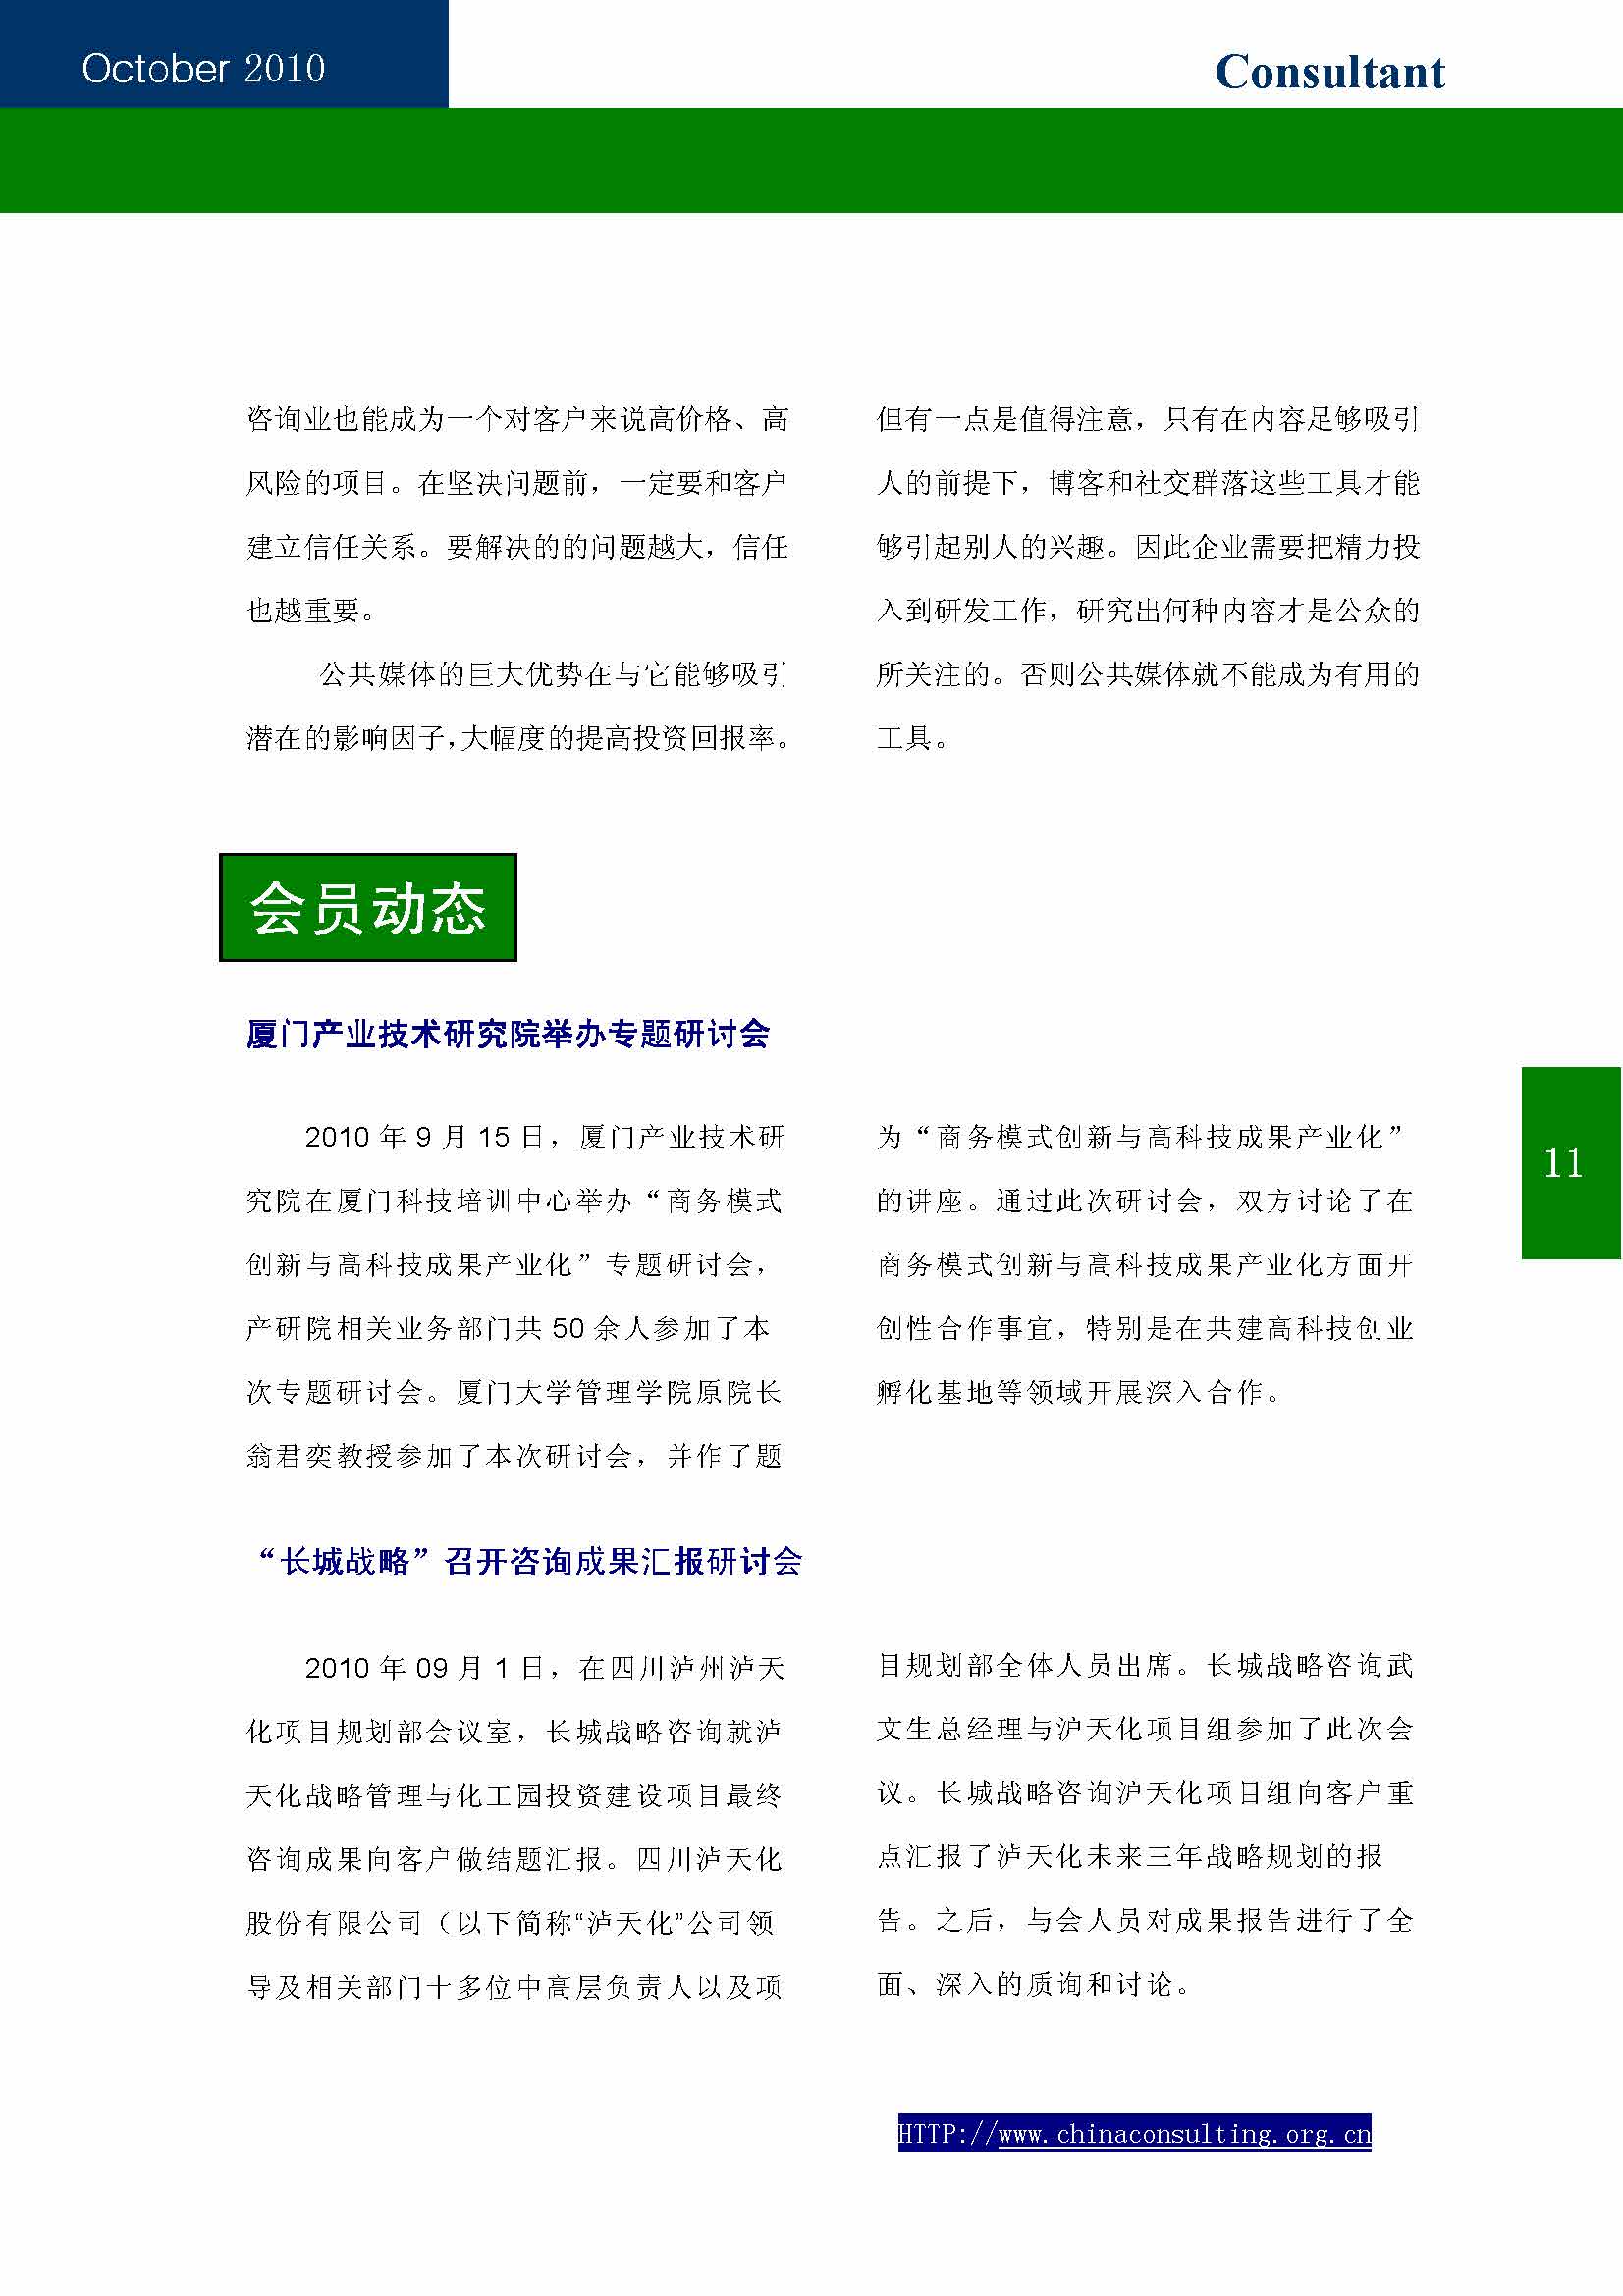 12中国科技咨询协会第十二期会刊_页面_13.jpg